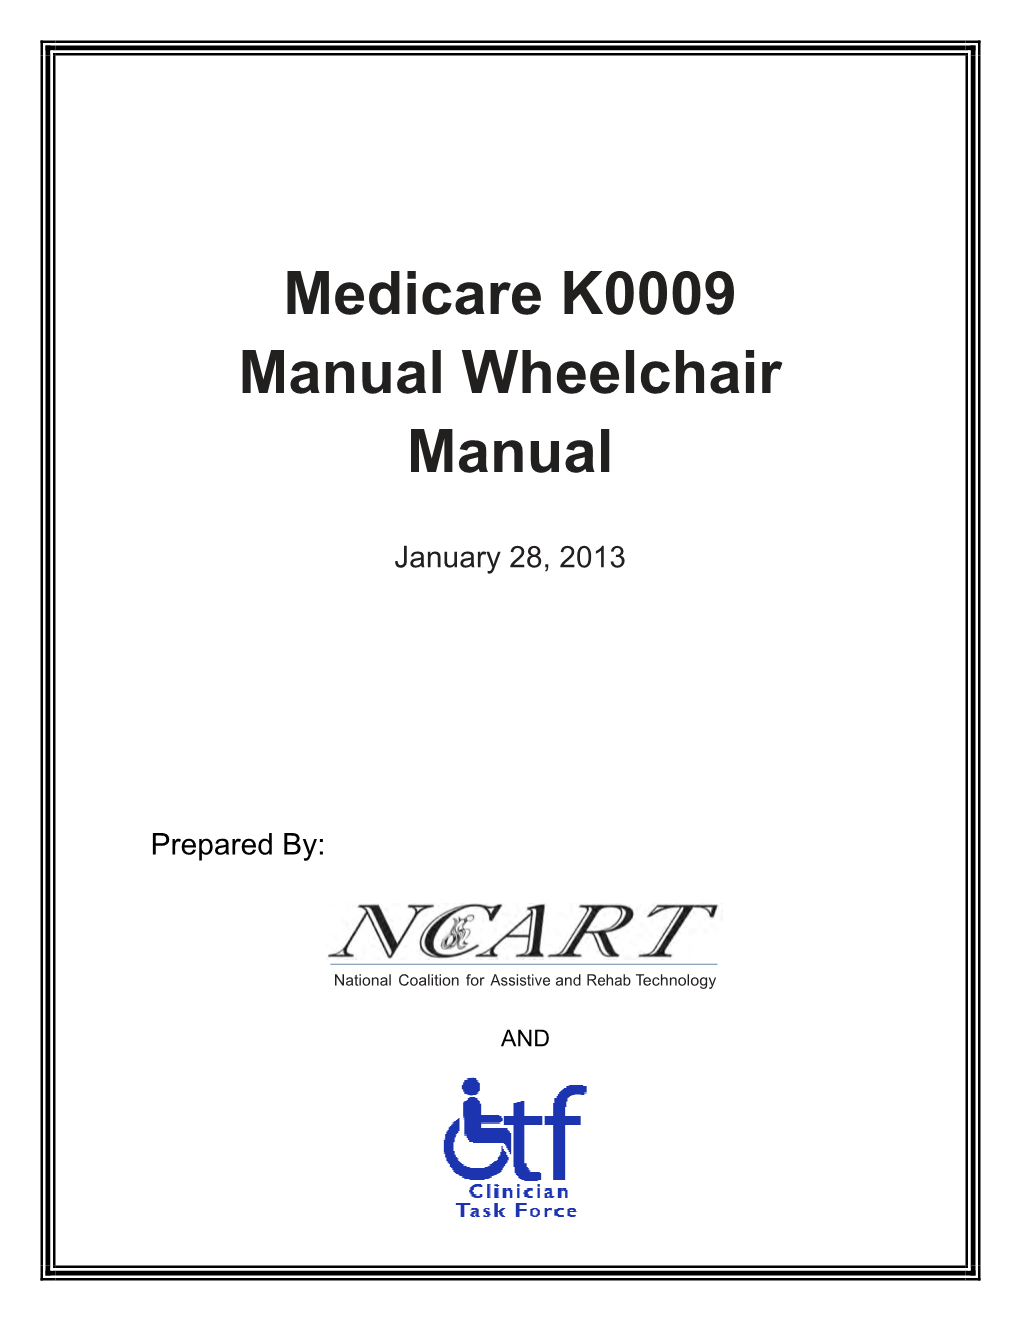 Medicare K0009 Manual Wheelchair Manual